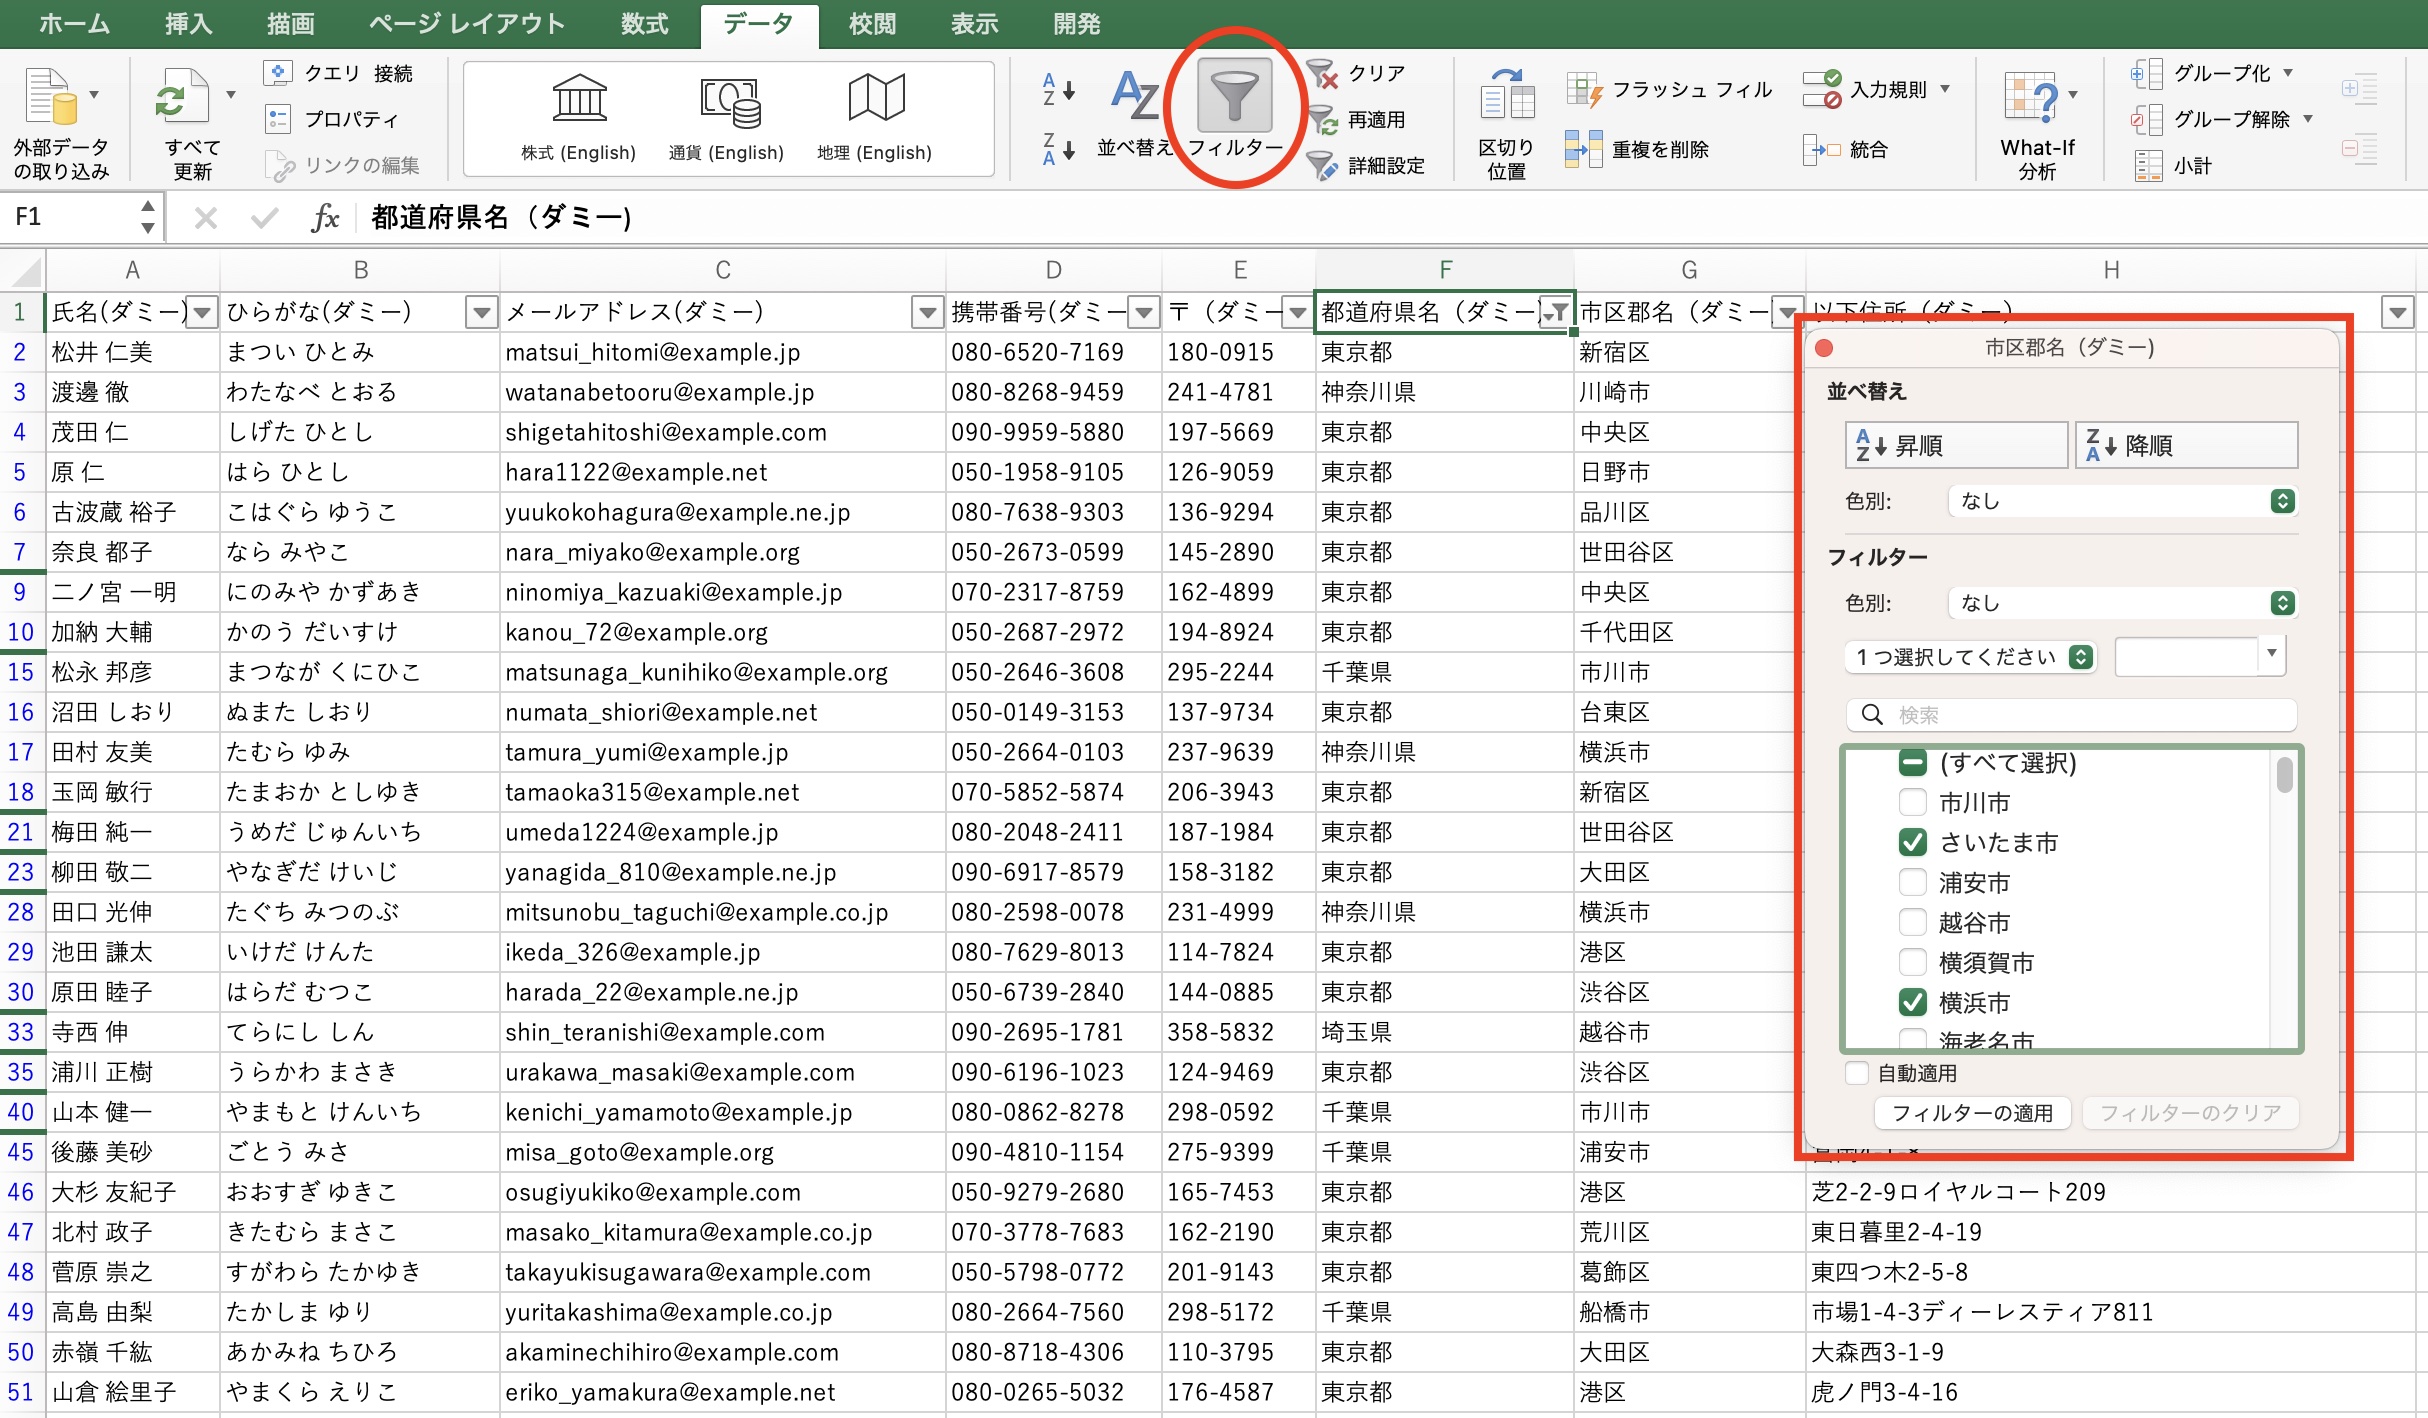 Excelをデータベースのように使うには、スライサーやフォームの活用が便利